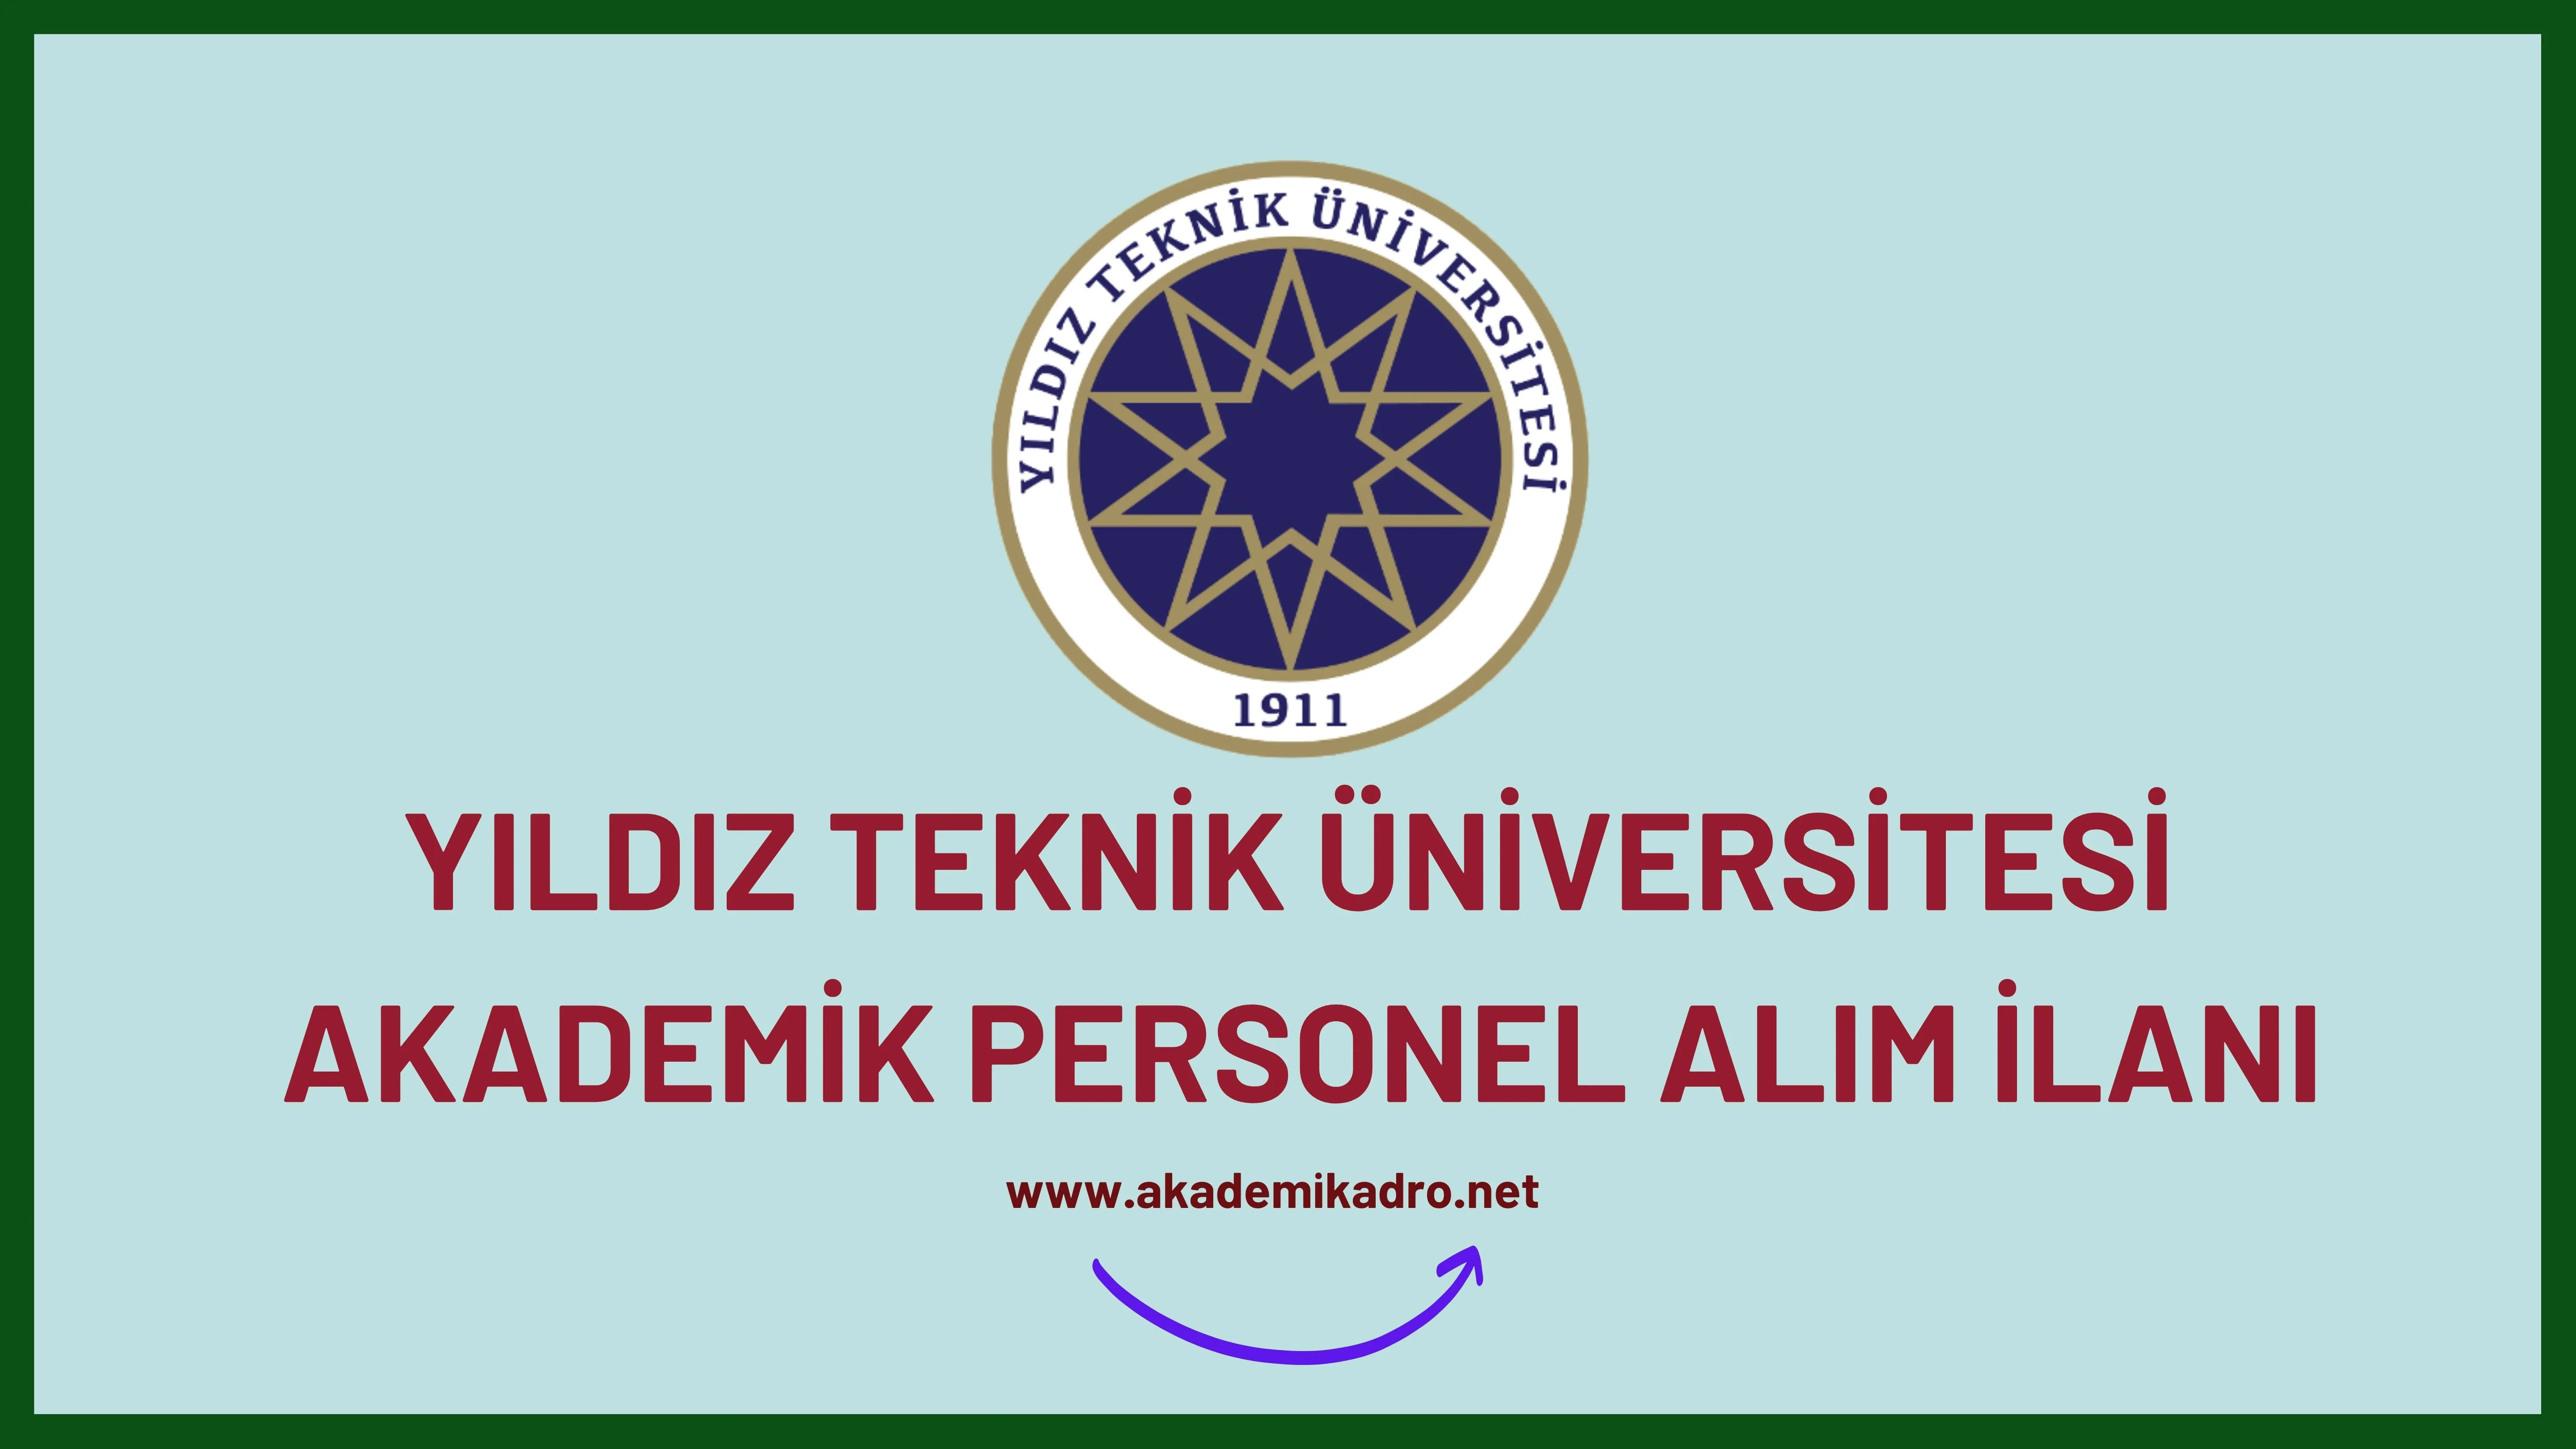 Yıldız Teknik Üniversitesi birçok alandan 25 Akademik personel alacak.